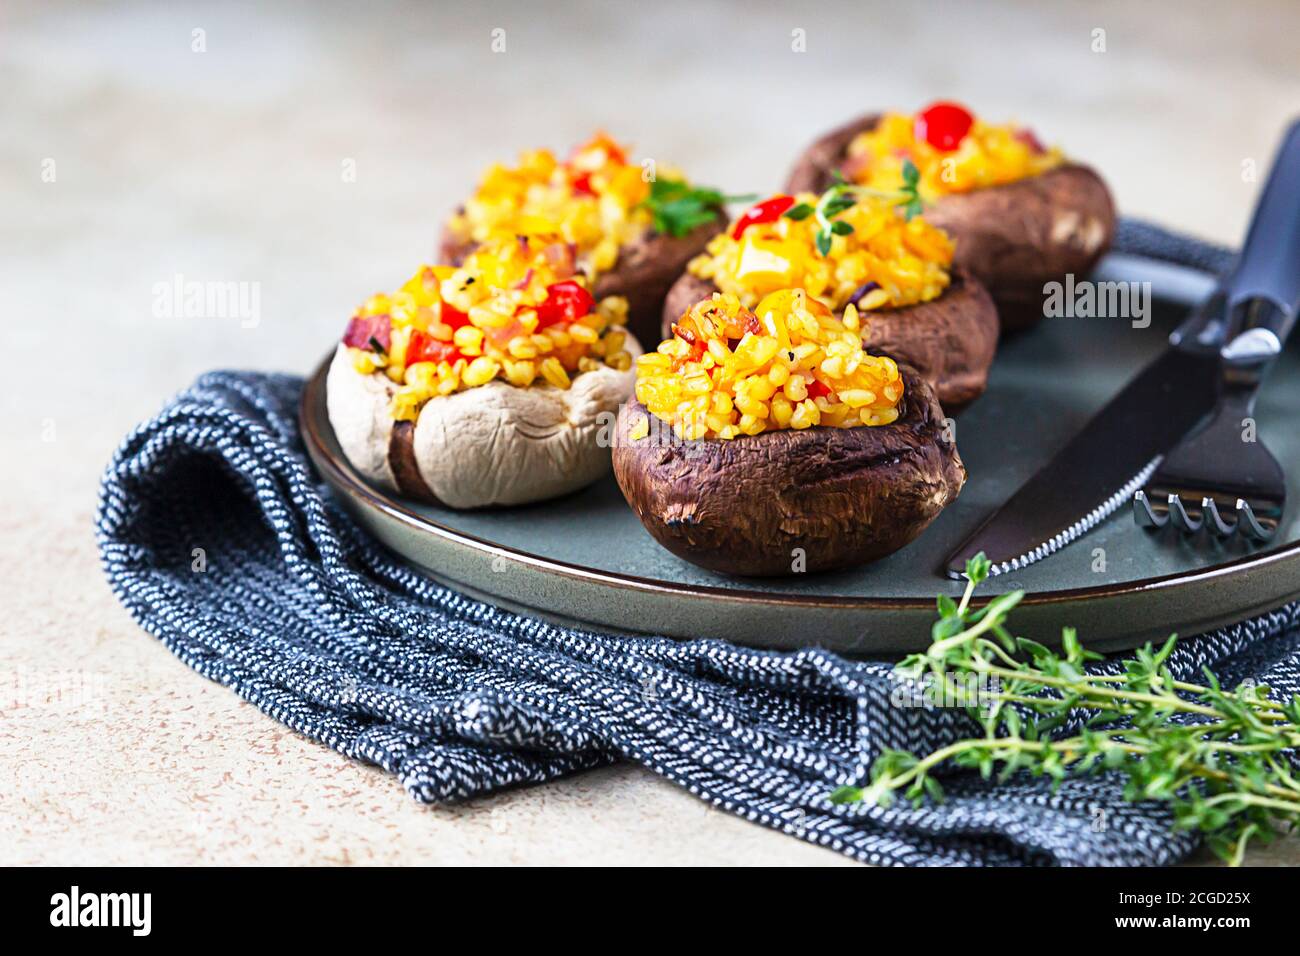 Gebackene gefüllte portobello-Pilze mit Bulgur-Pilaf und gehacktem Gemüse. Leckeres und nahrhaftes vegetarisches Gericht. Steinhintergrund. Stockfoto